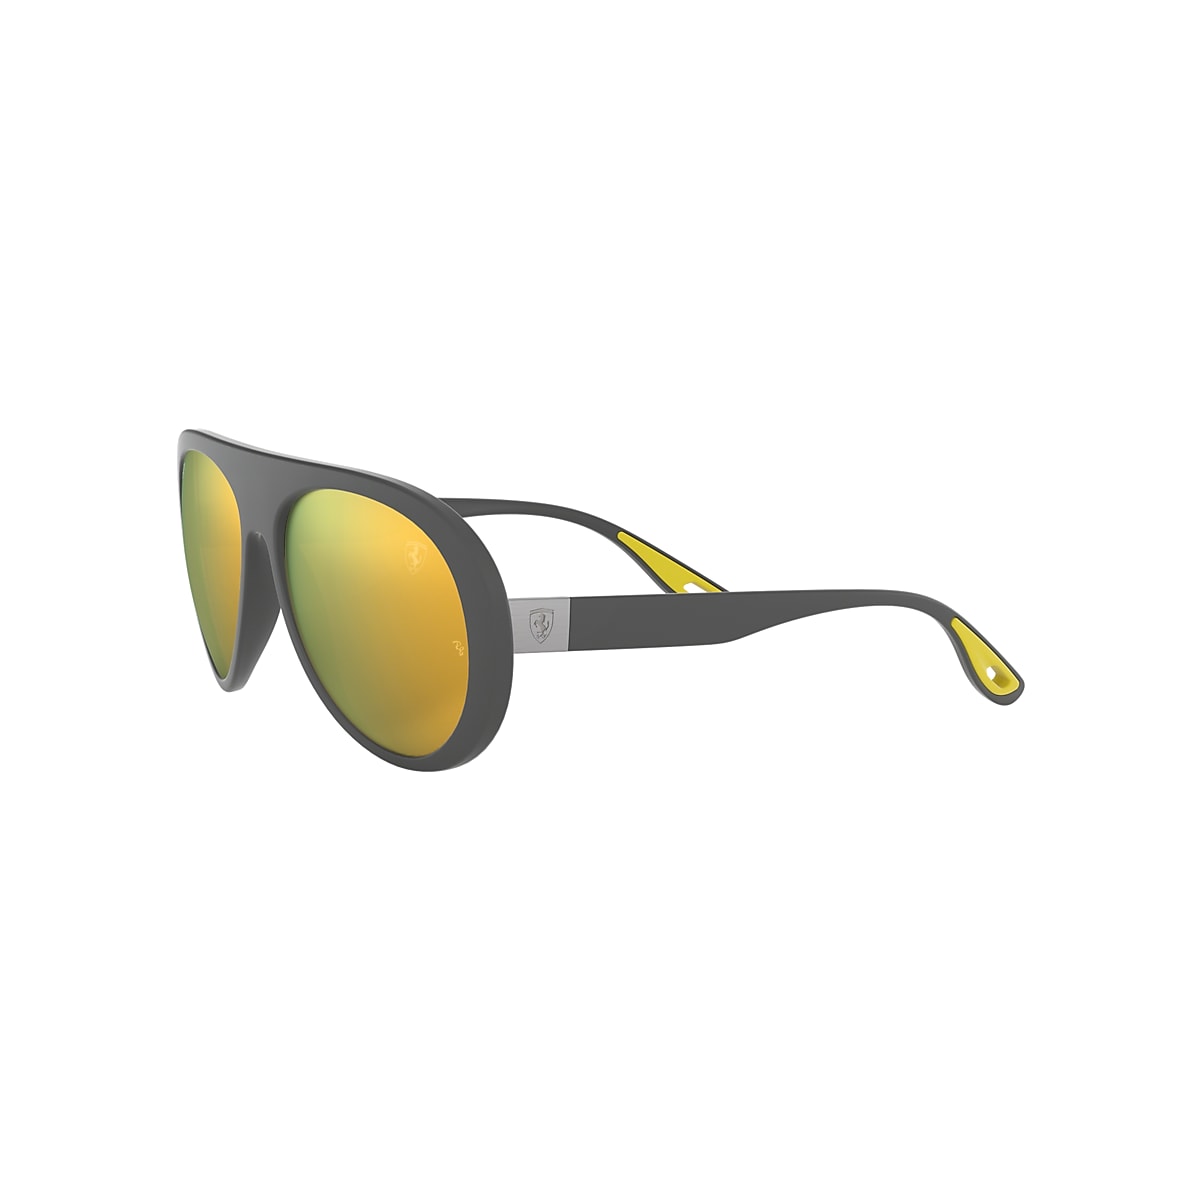 Ferrari Ferrari sunglasses with yellow lenses Unisex